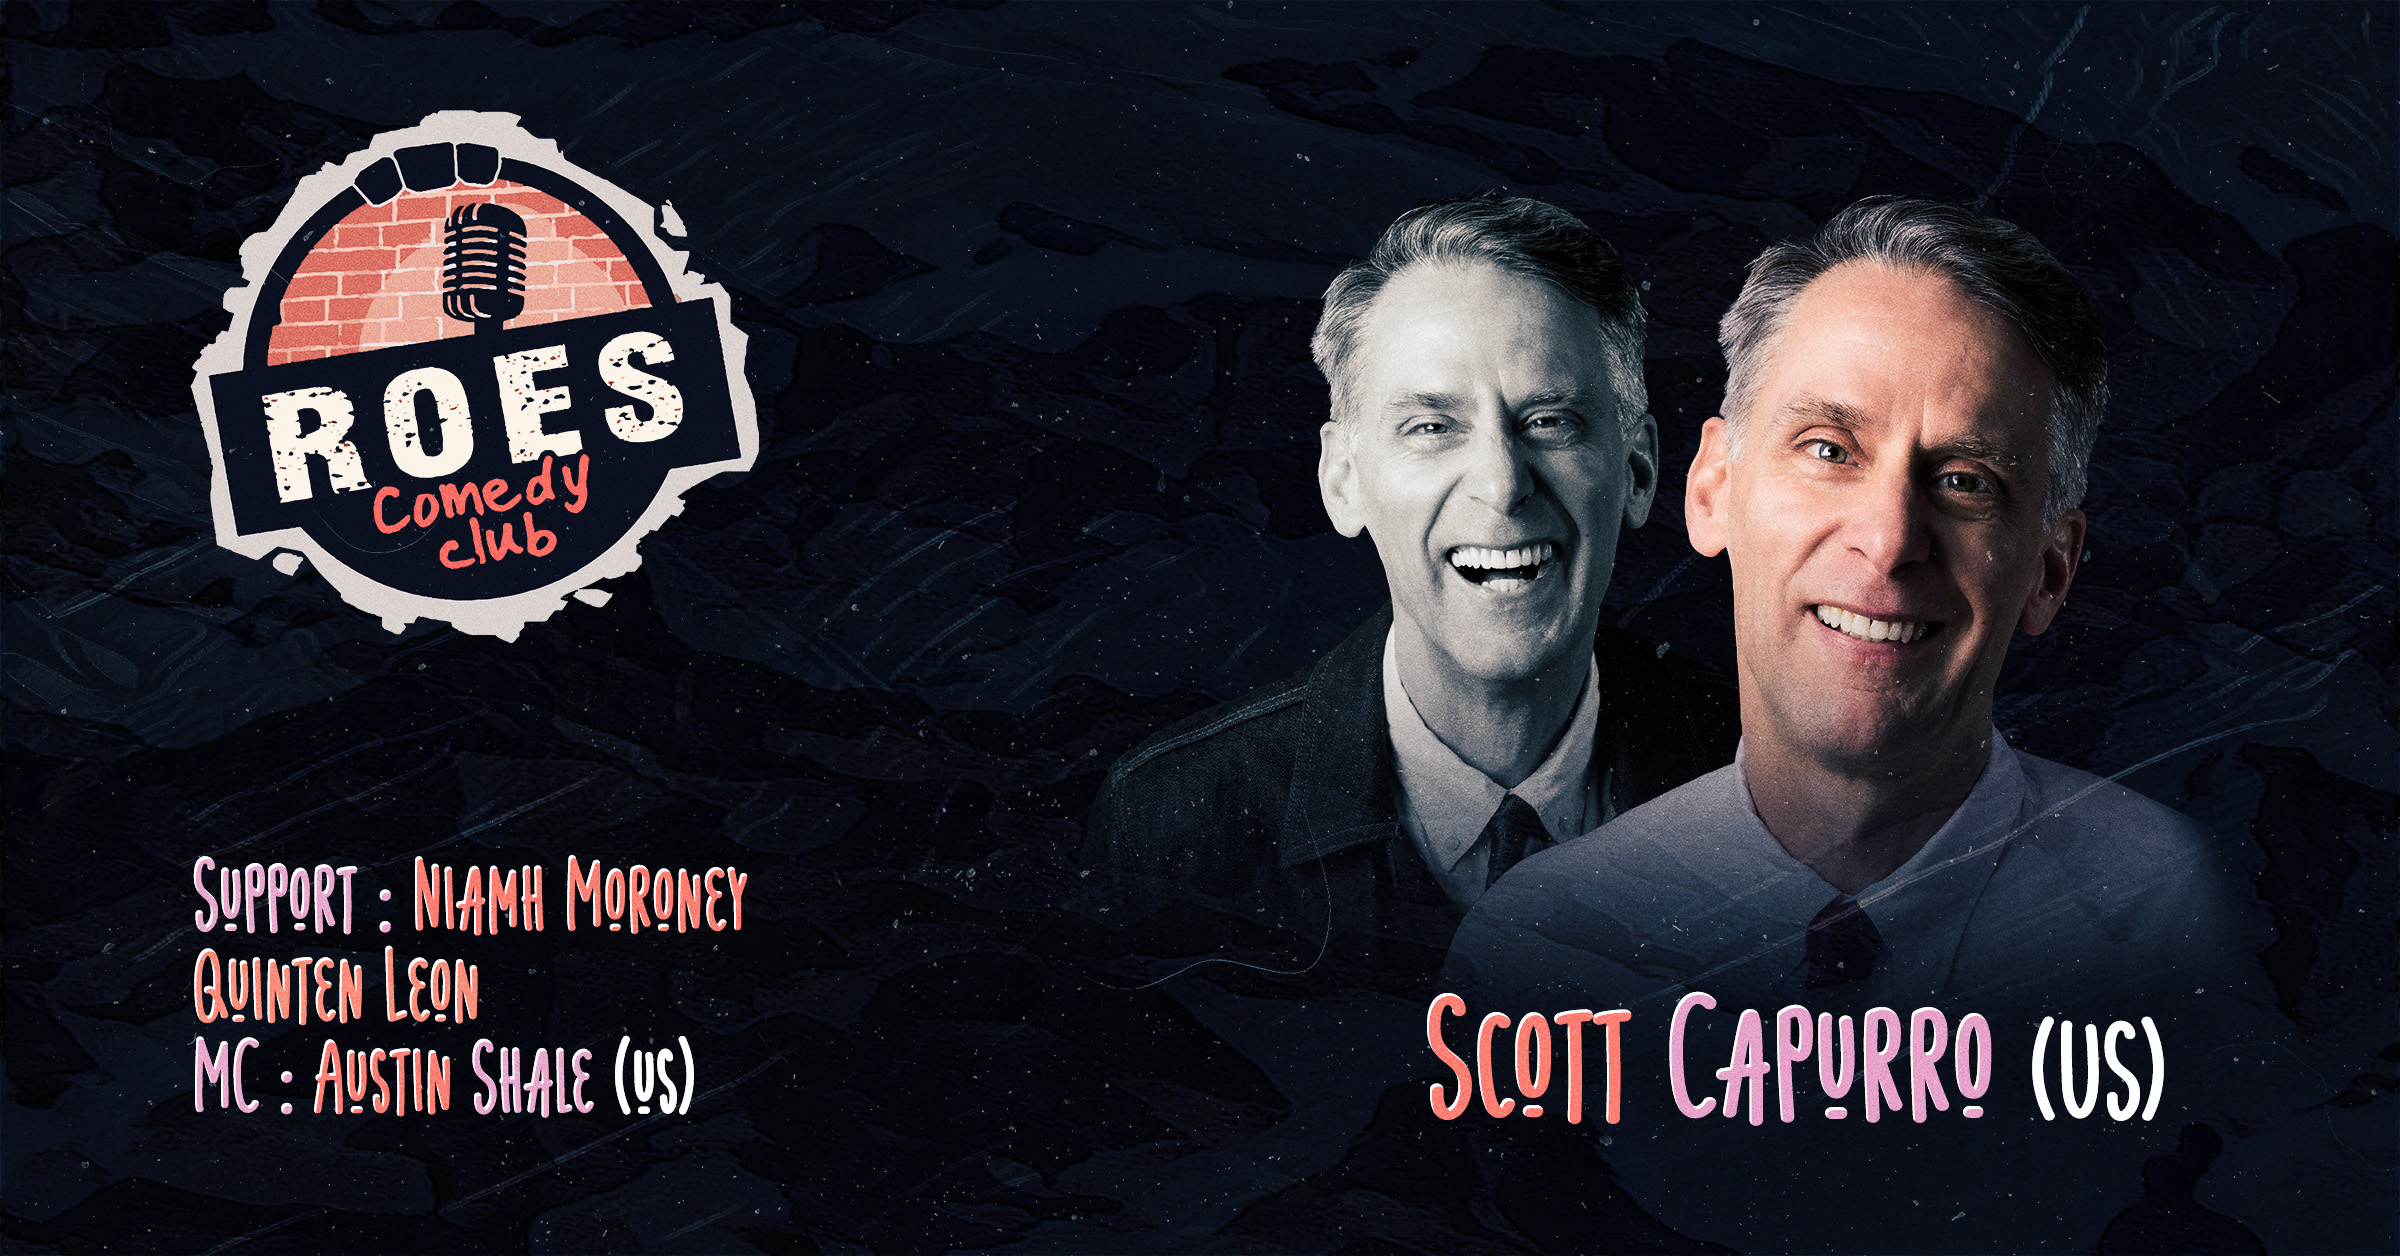 Ticket kopen voor evenement Roes Comedy Club: Scott Capurro (English comedy show)